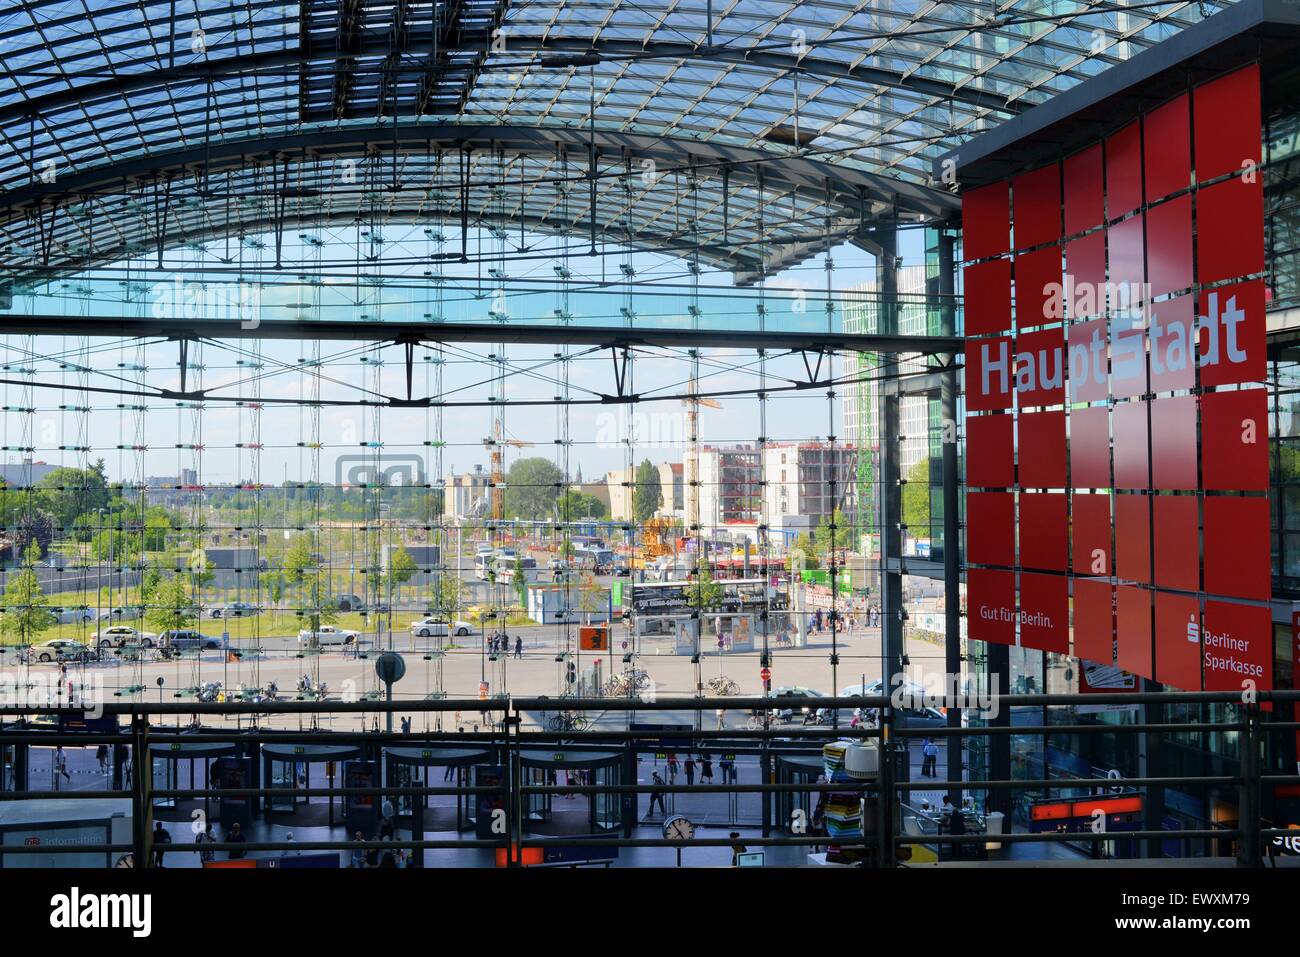 Gare centrale de Berlin Hauptbahnhof de l'intérieur donnant sur la façade de verre, Allemagne Banque D'Images